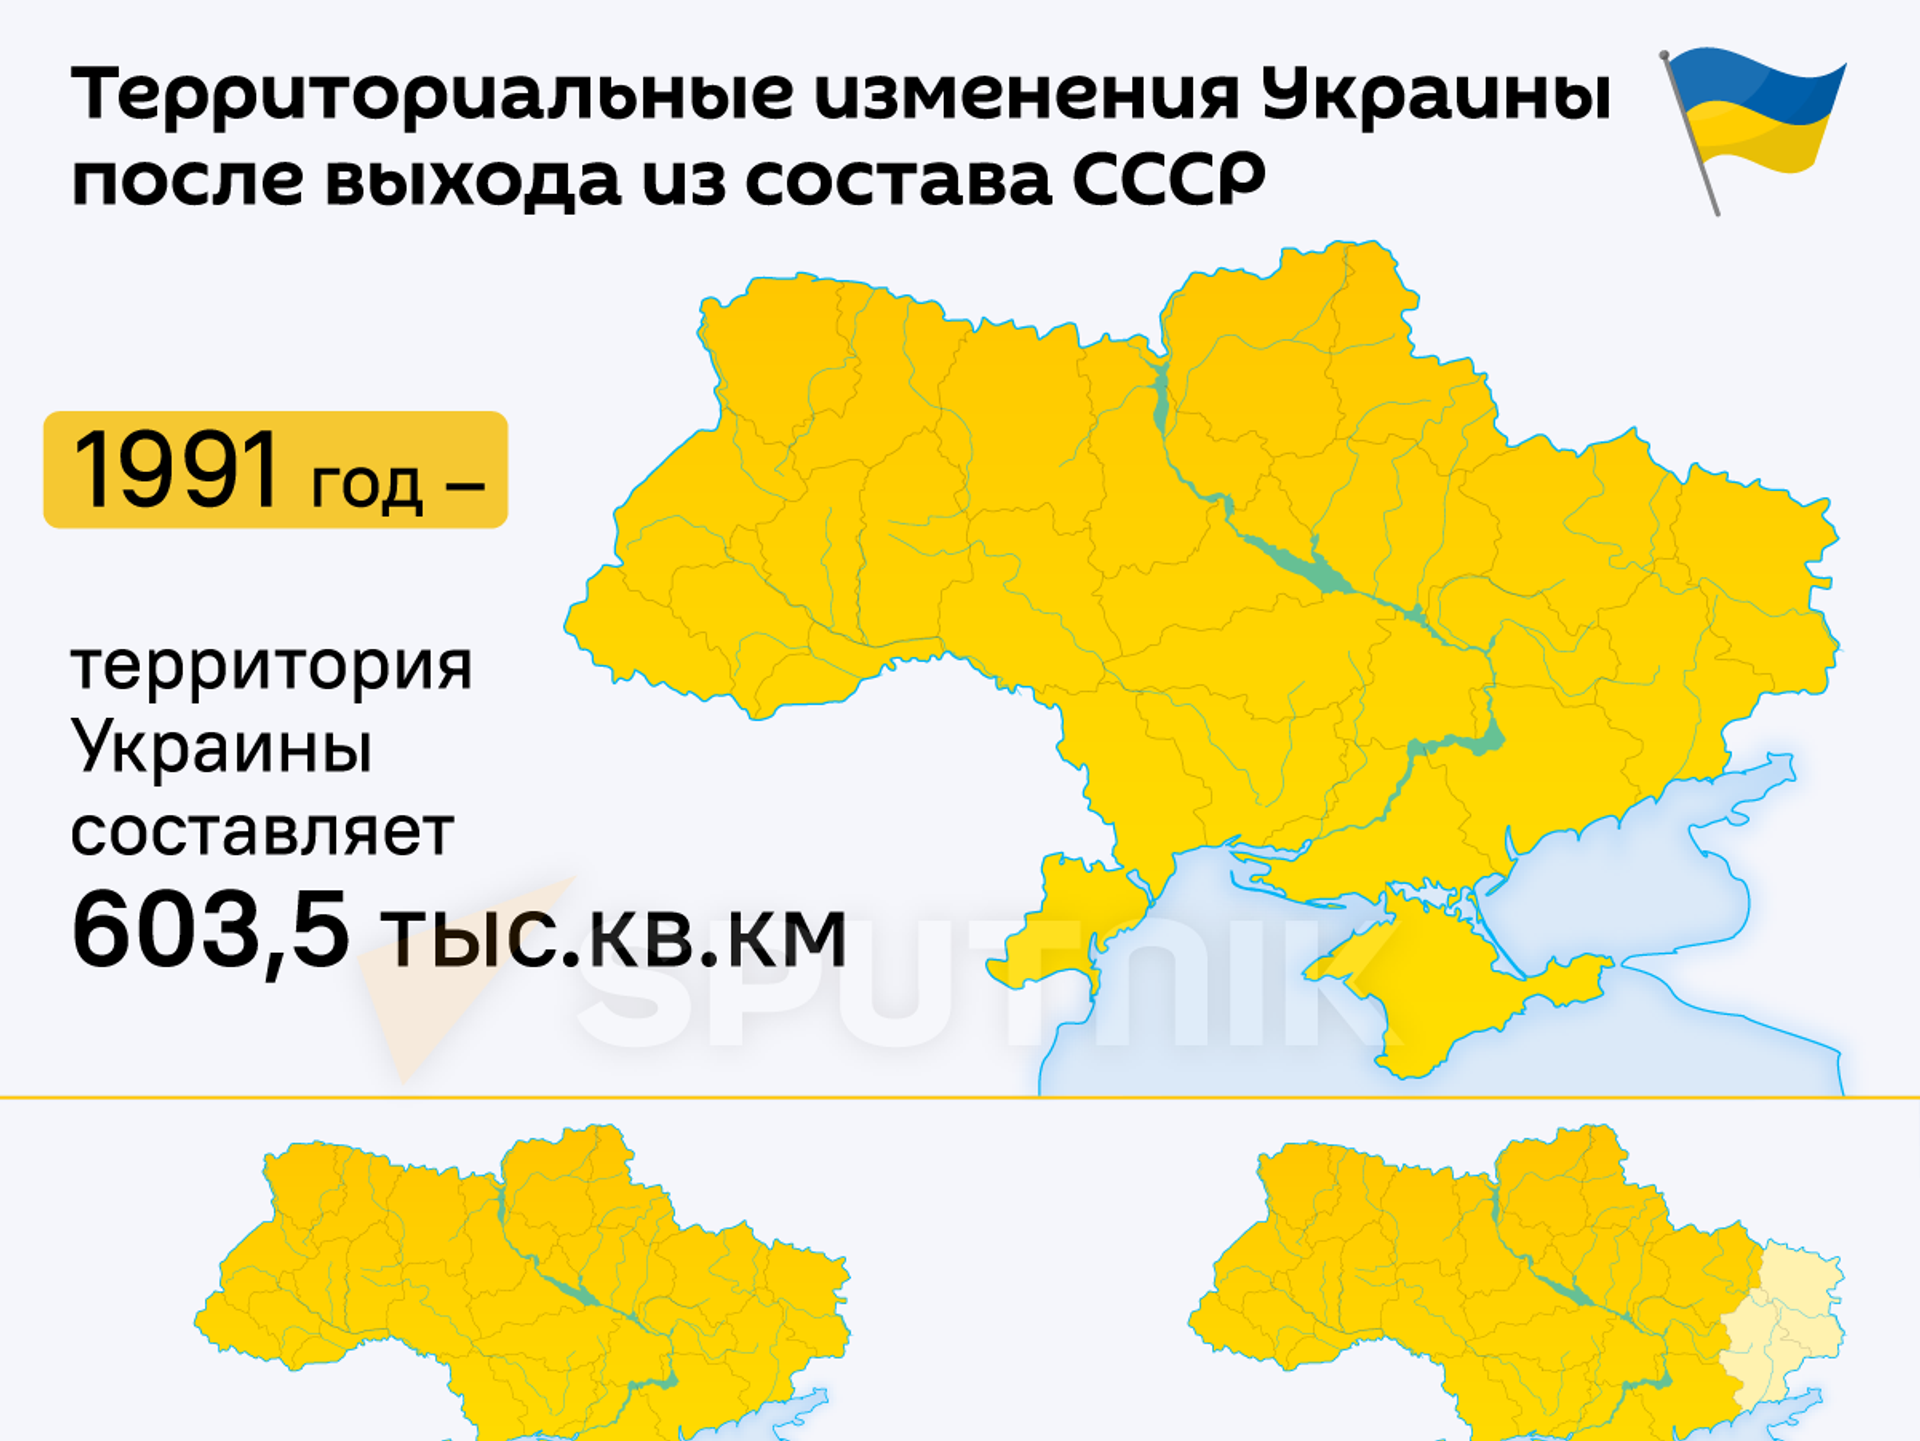 Какой была украина в 1991. Территрория уарпинв. Территория Укран. Территория Украины 2014 года. Территория Украины 1991 года.